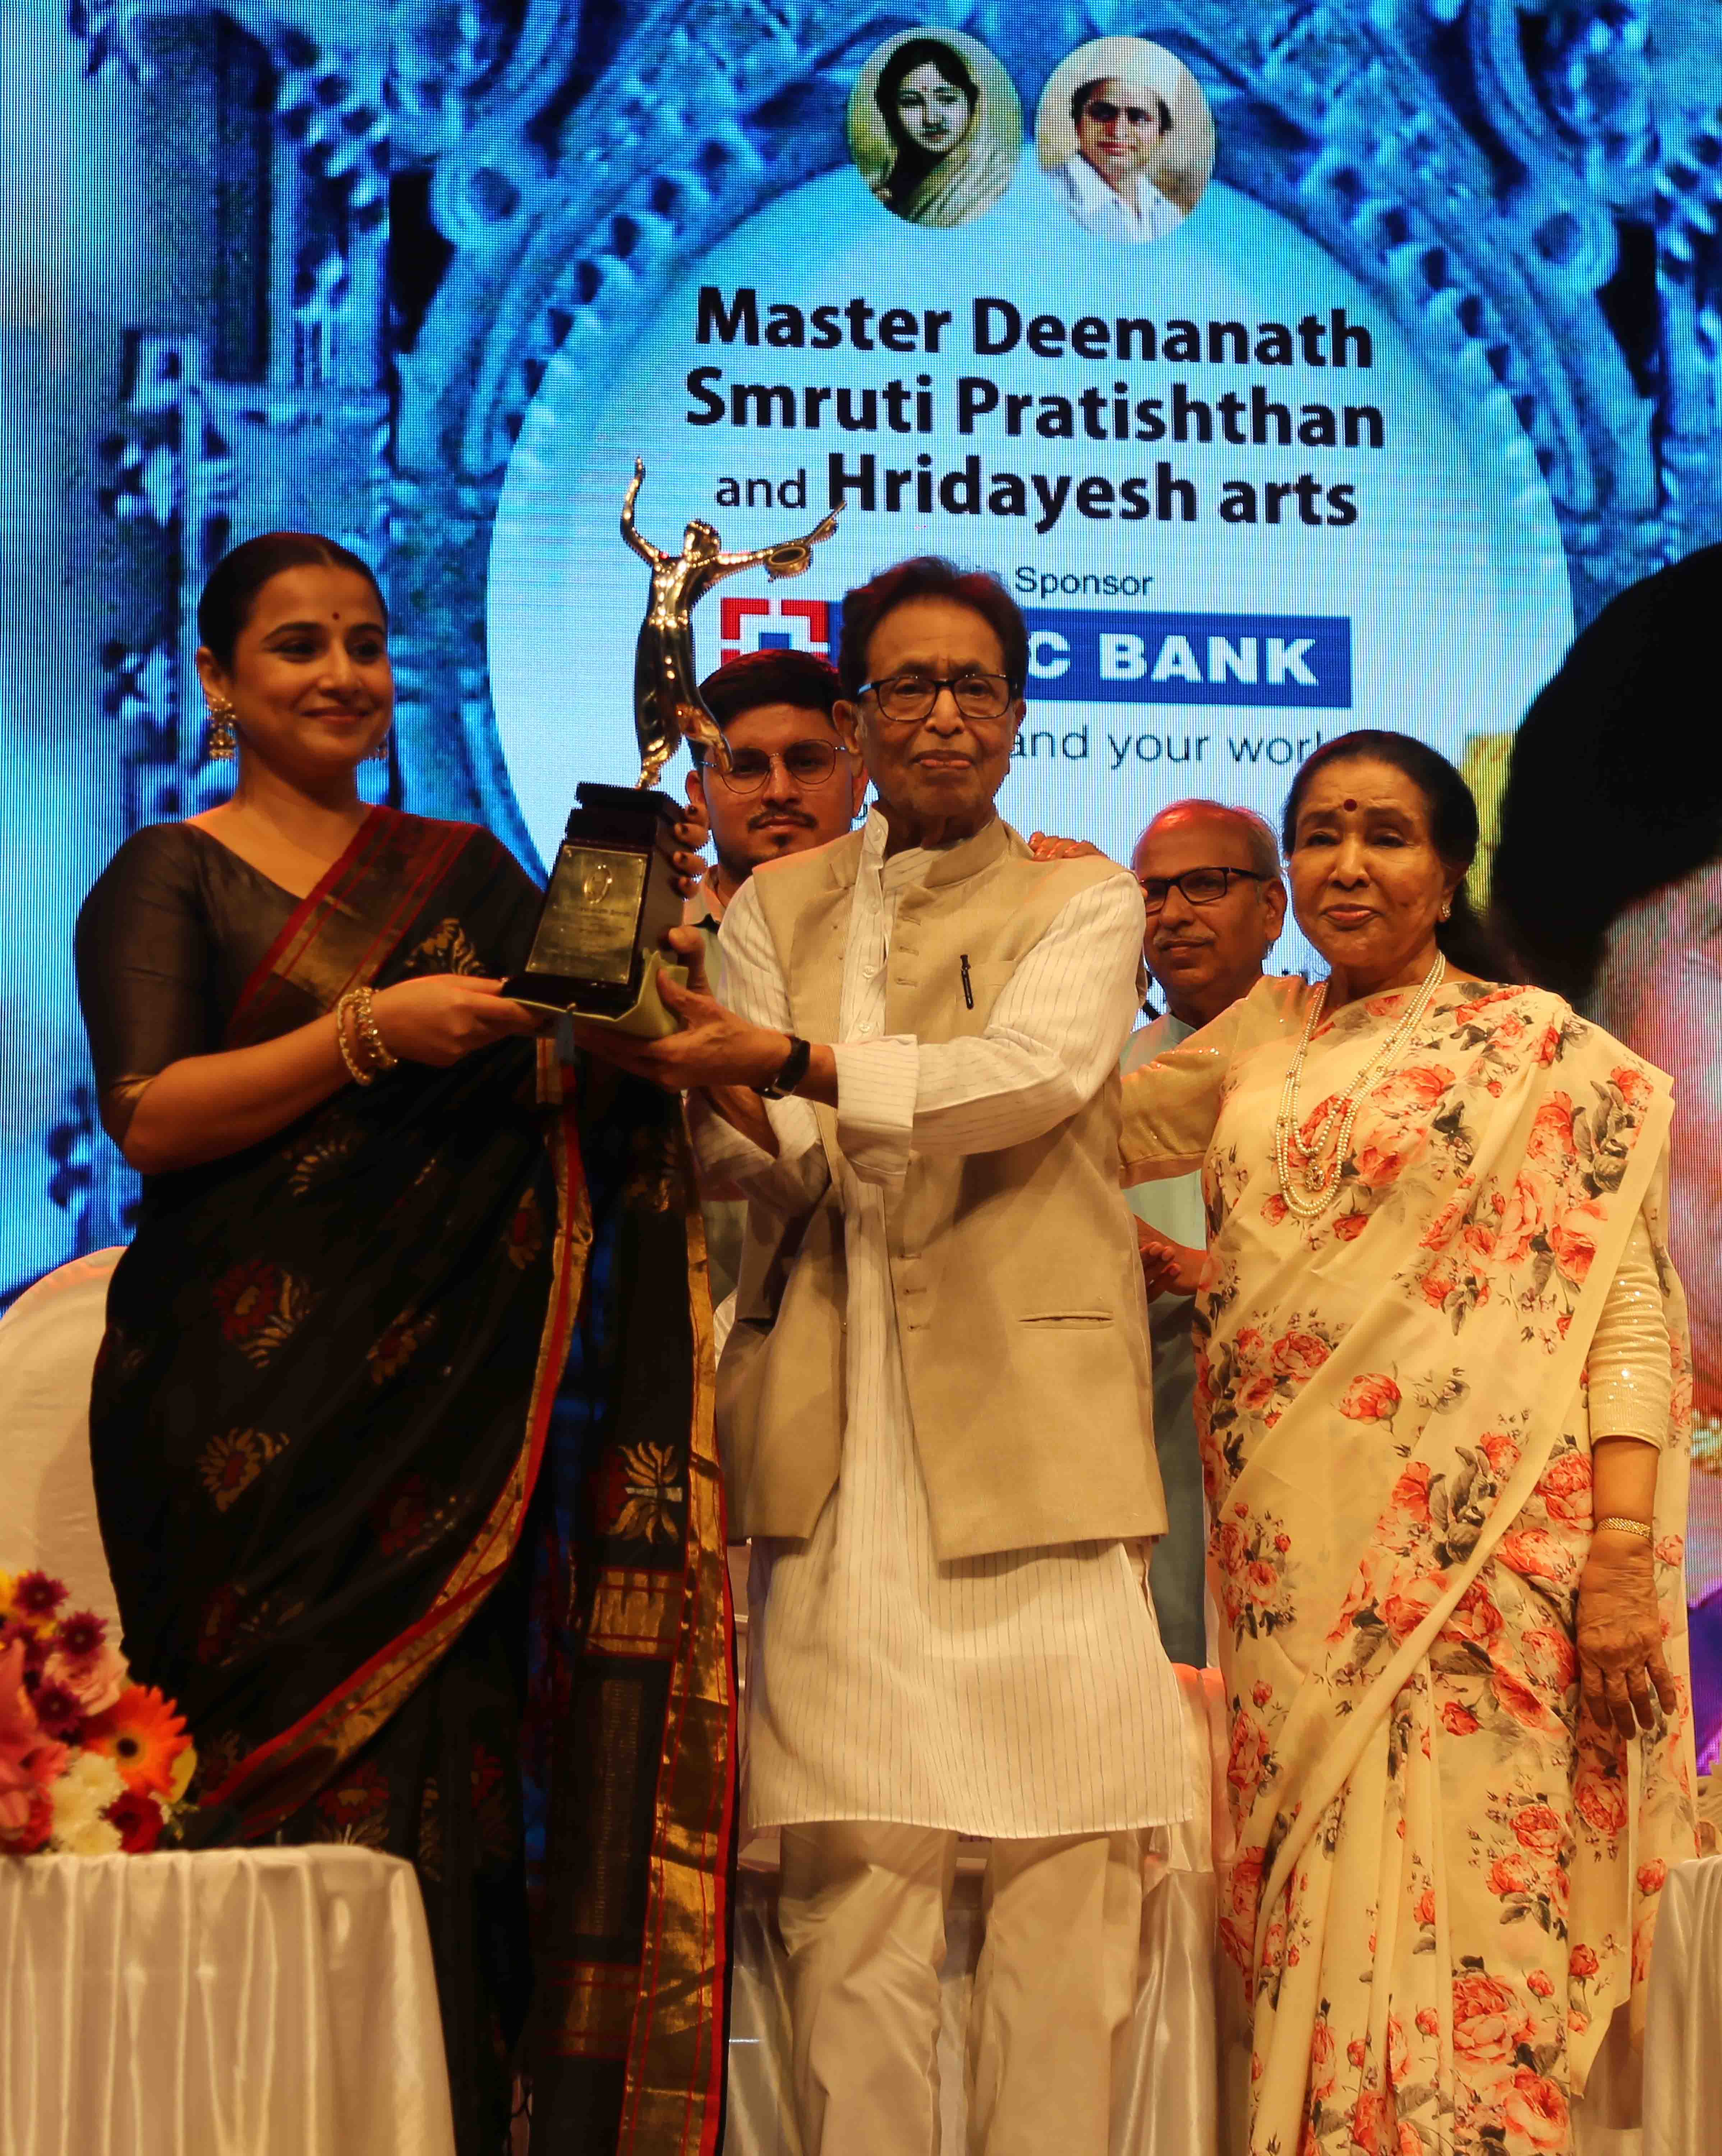 Asha Bhosle Vidya Balan Pankaj Udhas Prasad Oak Receive Lata Deenanath Mangeshkar Awards And